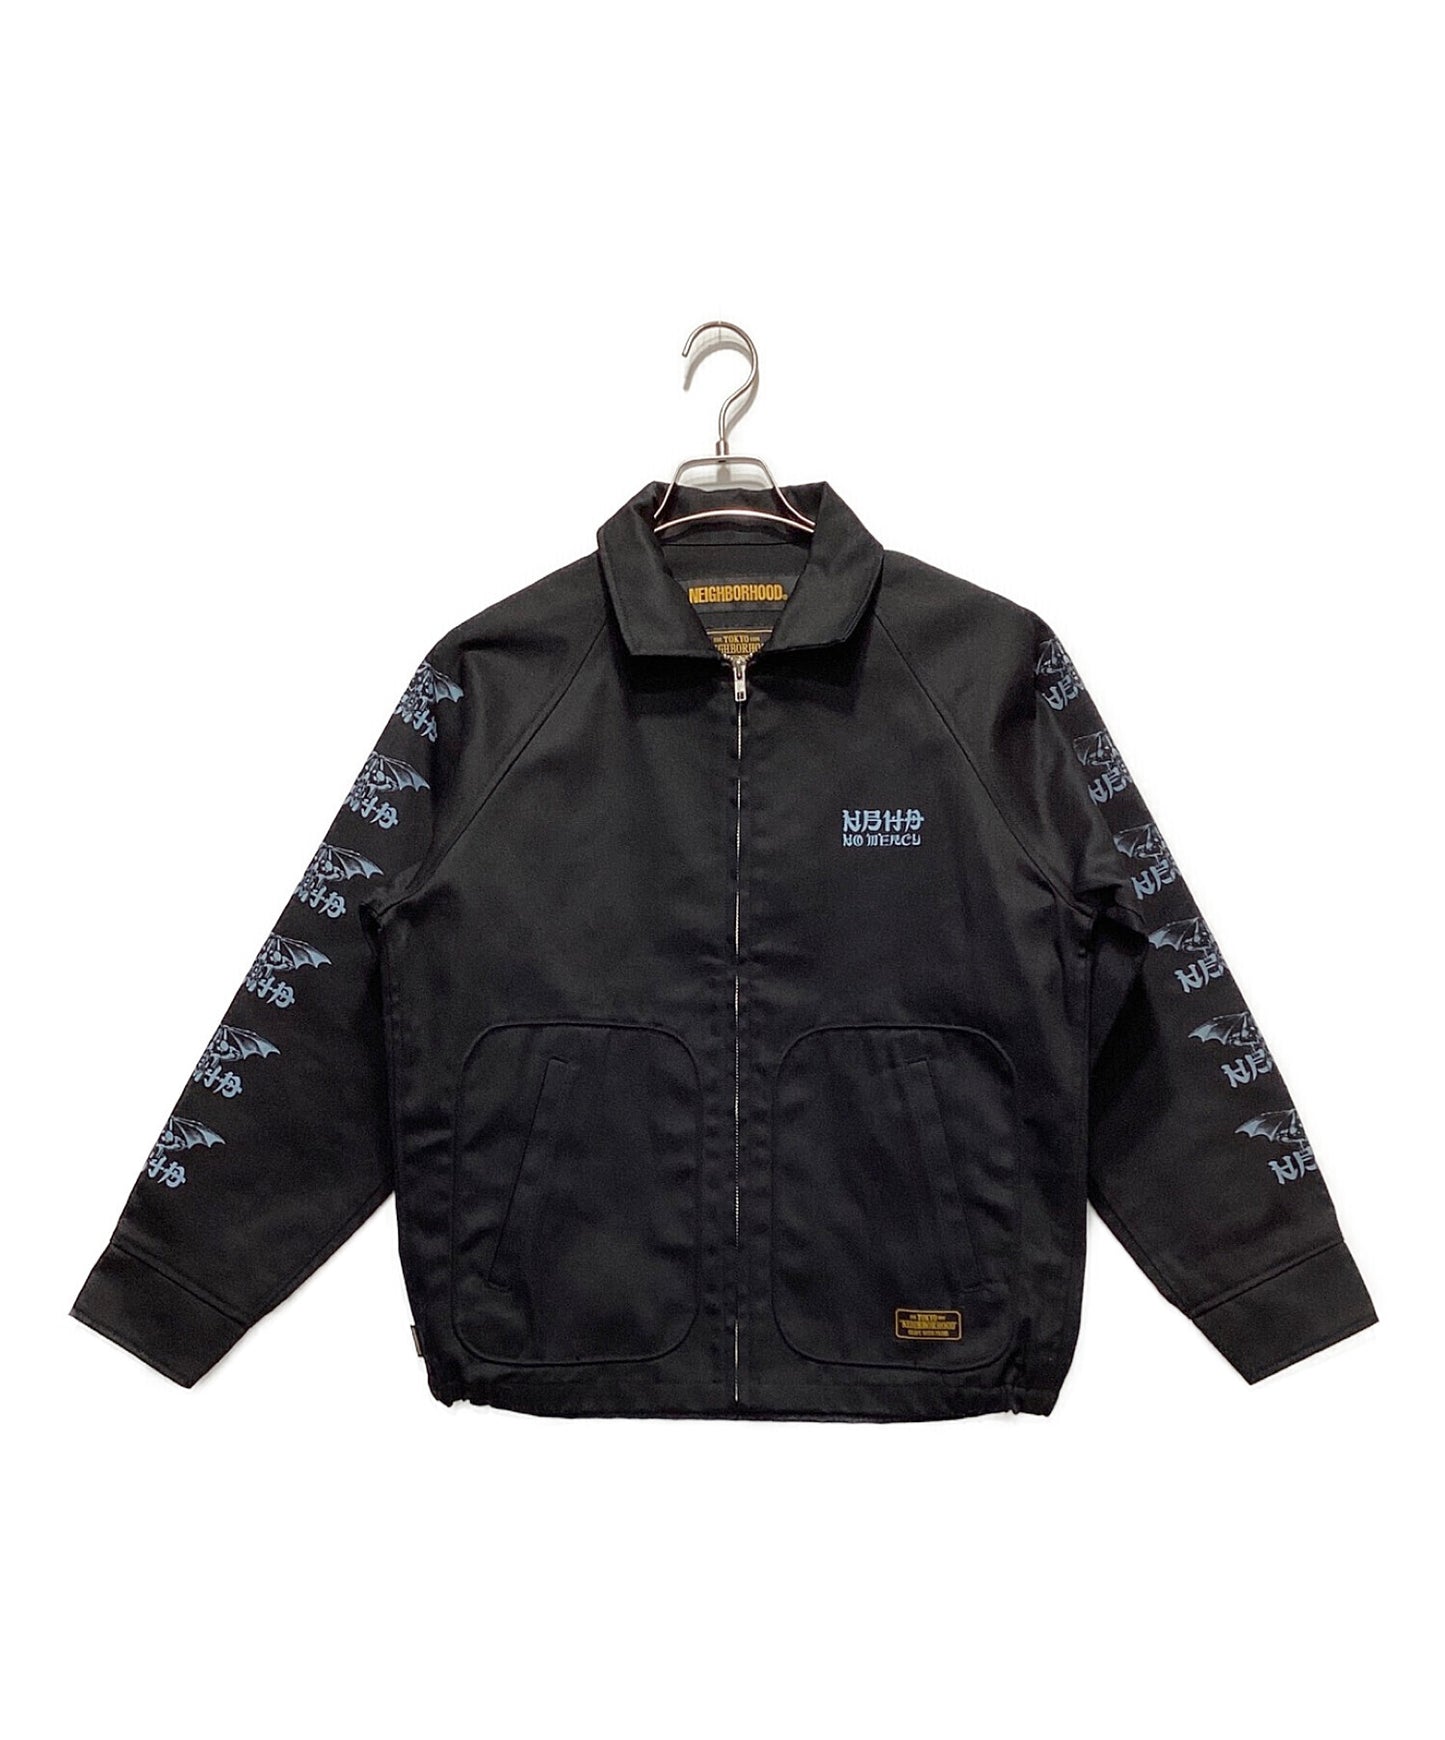 neighborhood DRIZZLER jacket | chidori.co